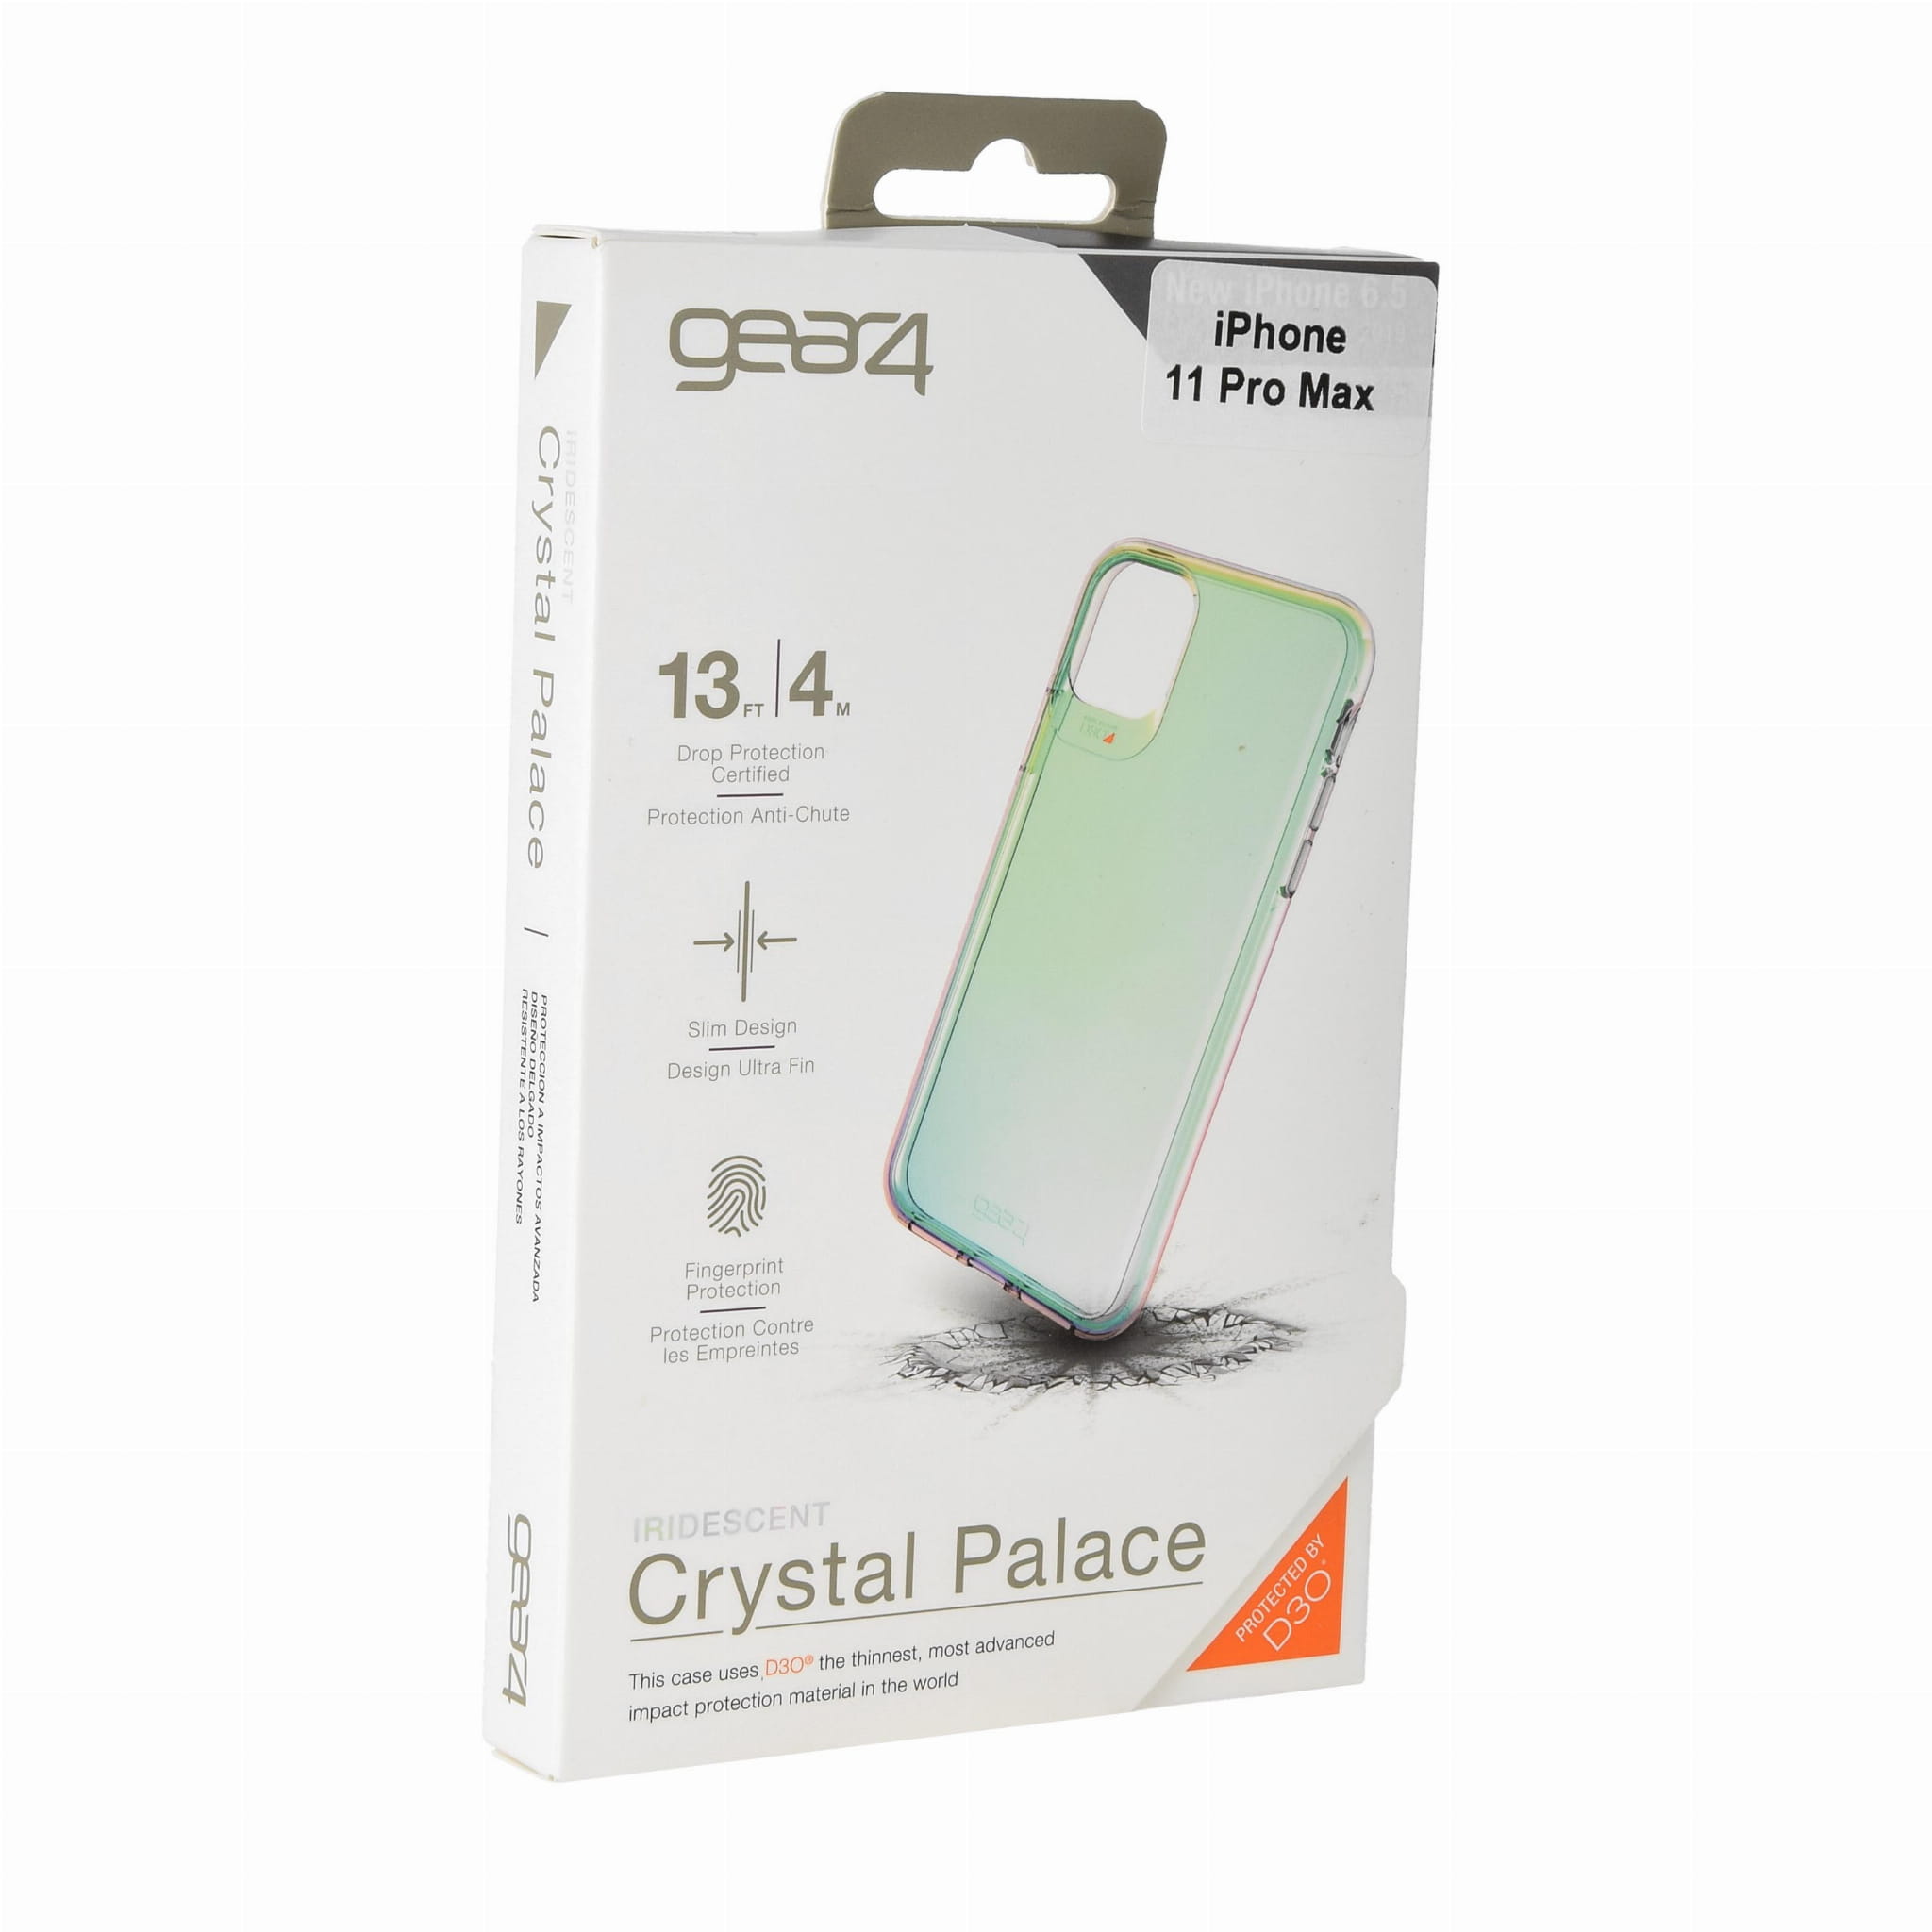 Schutzhülle Gear4 aus der Serie Crystal Palace für iPhone 11 Pro Max irisierend.